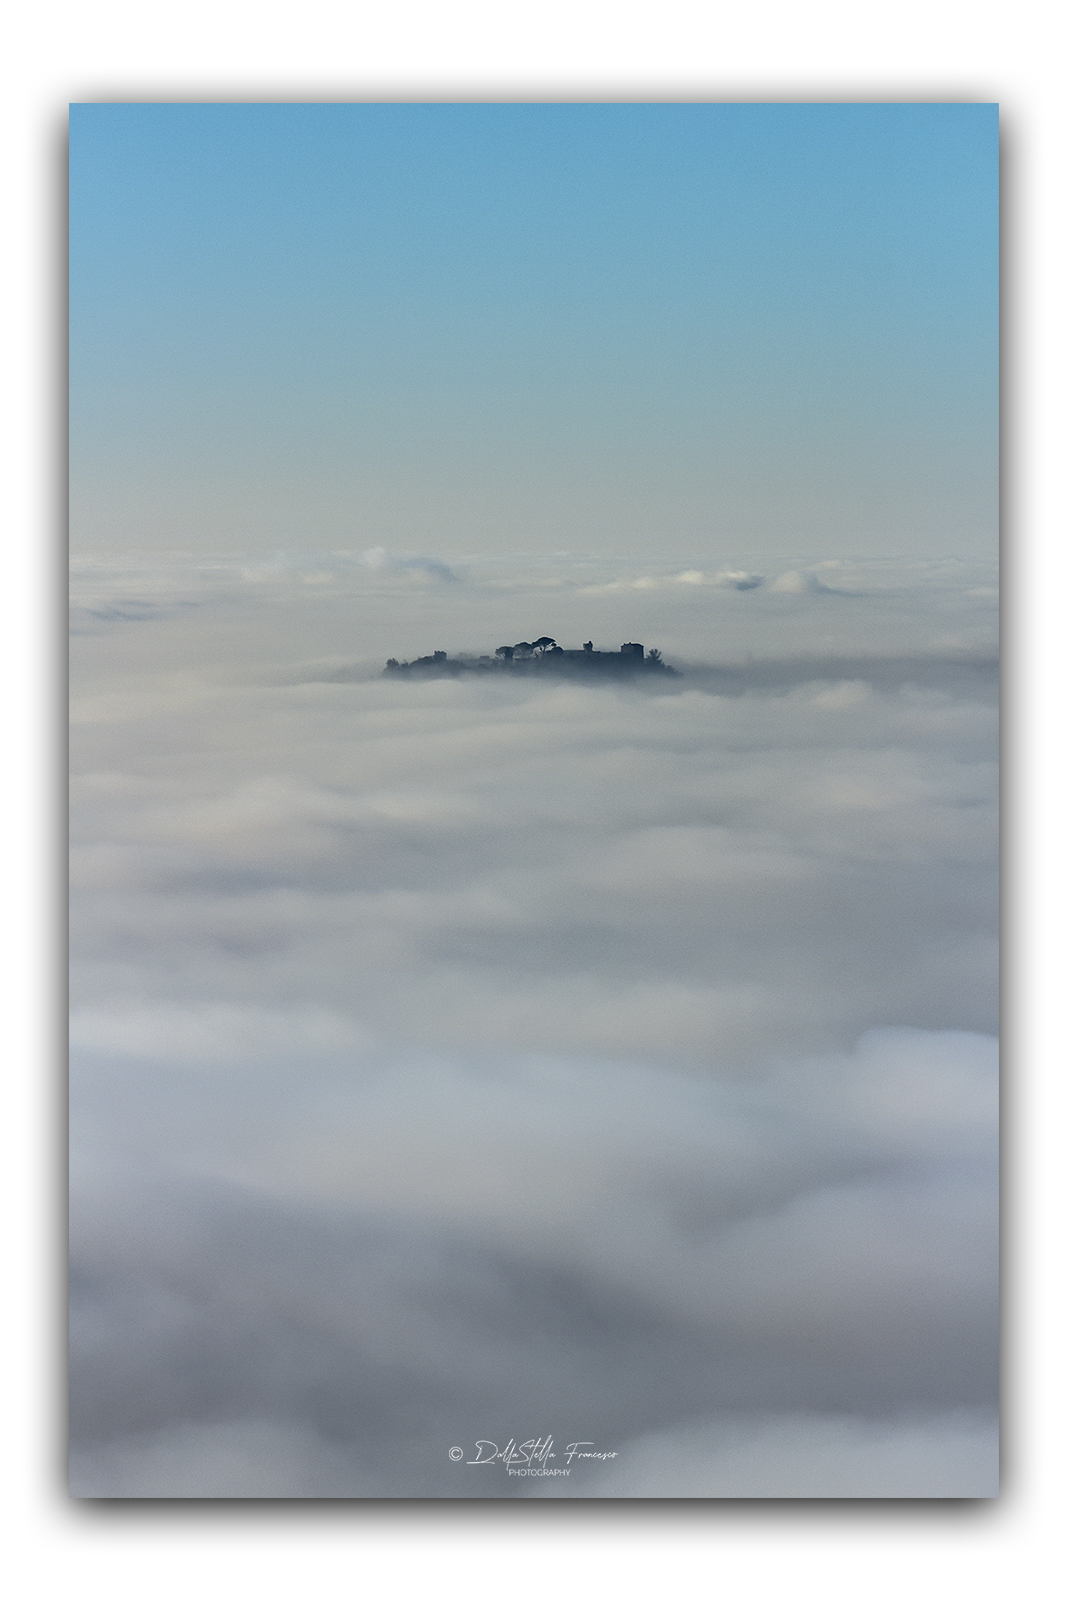 Un isola nel mare di nebbia...